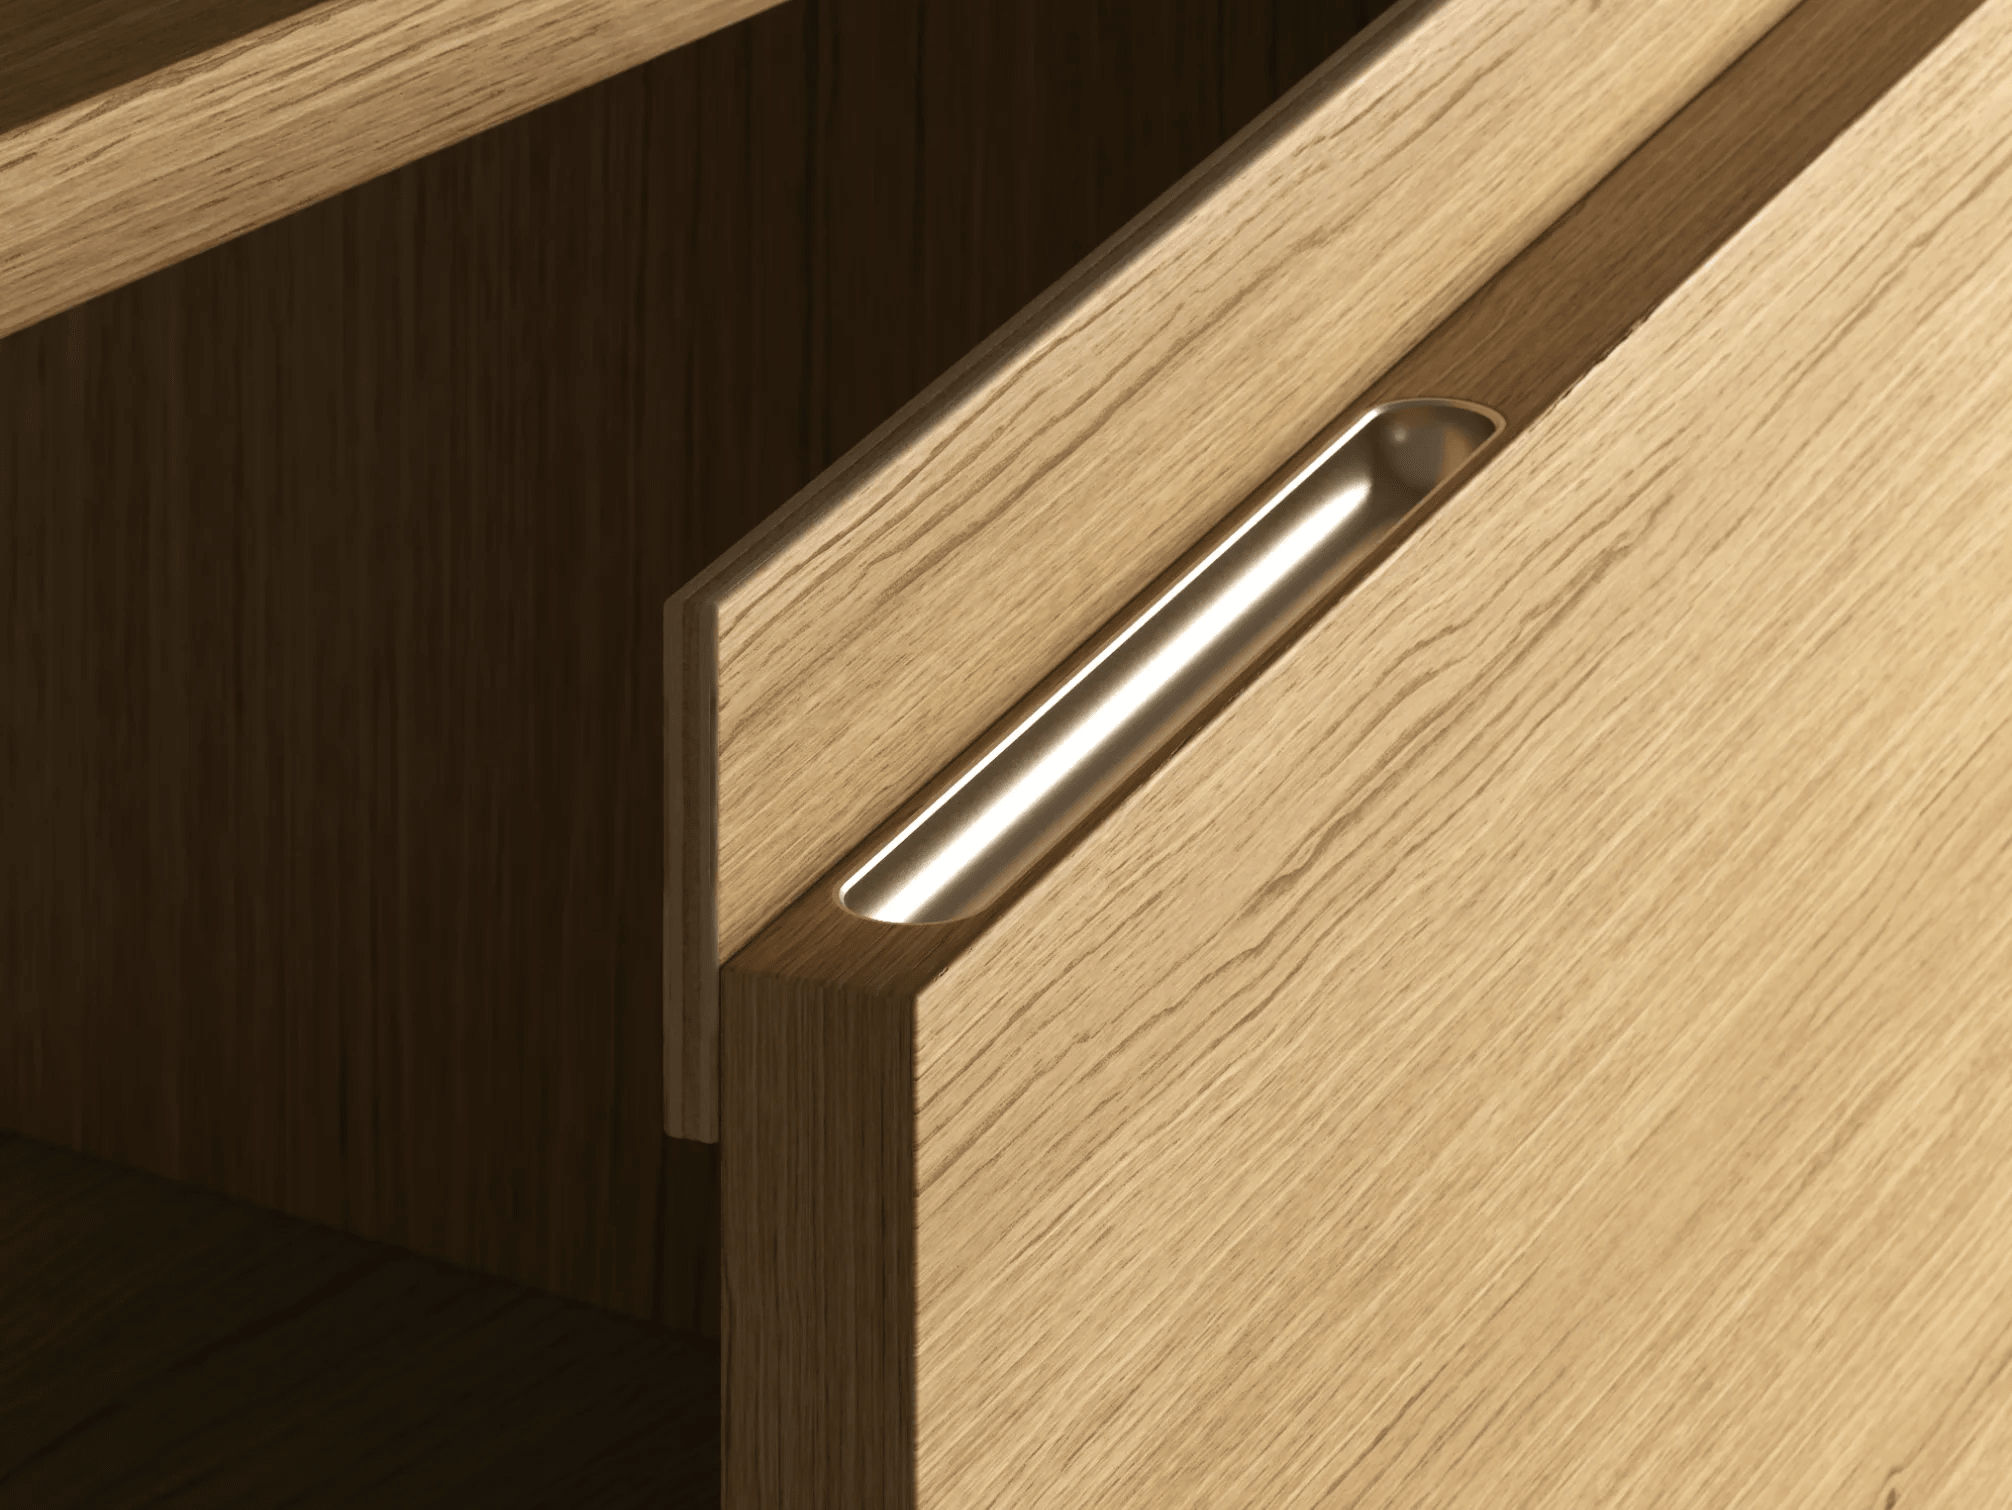 Grosser Eichenfurnier - Oak Nachttisch mit Türen furniere - 98x73x40cm 7